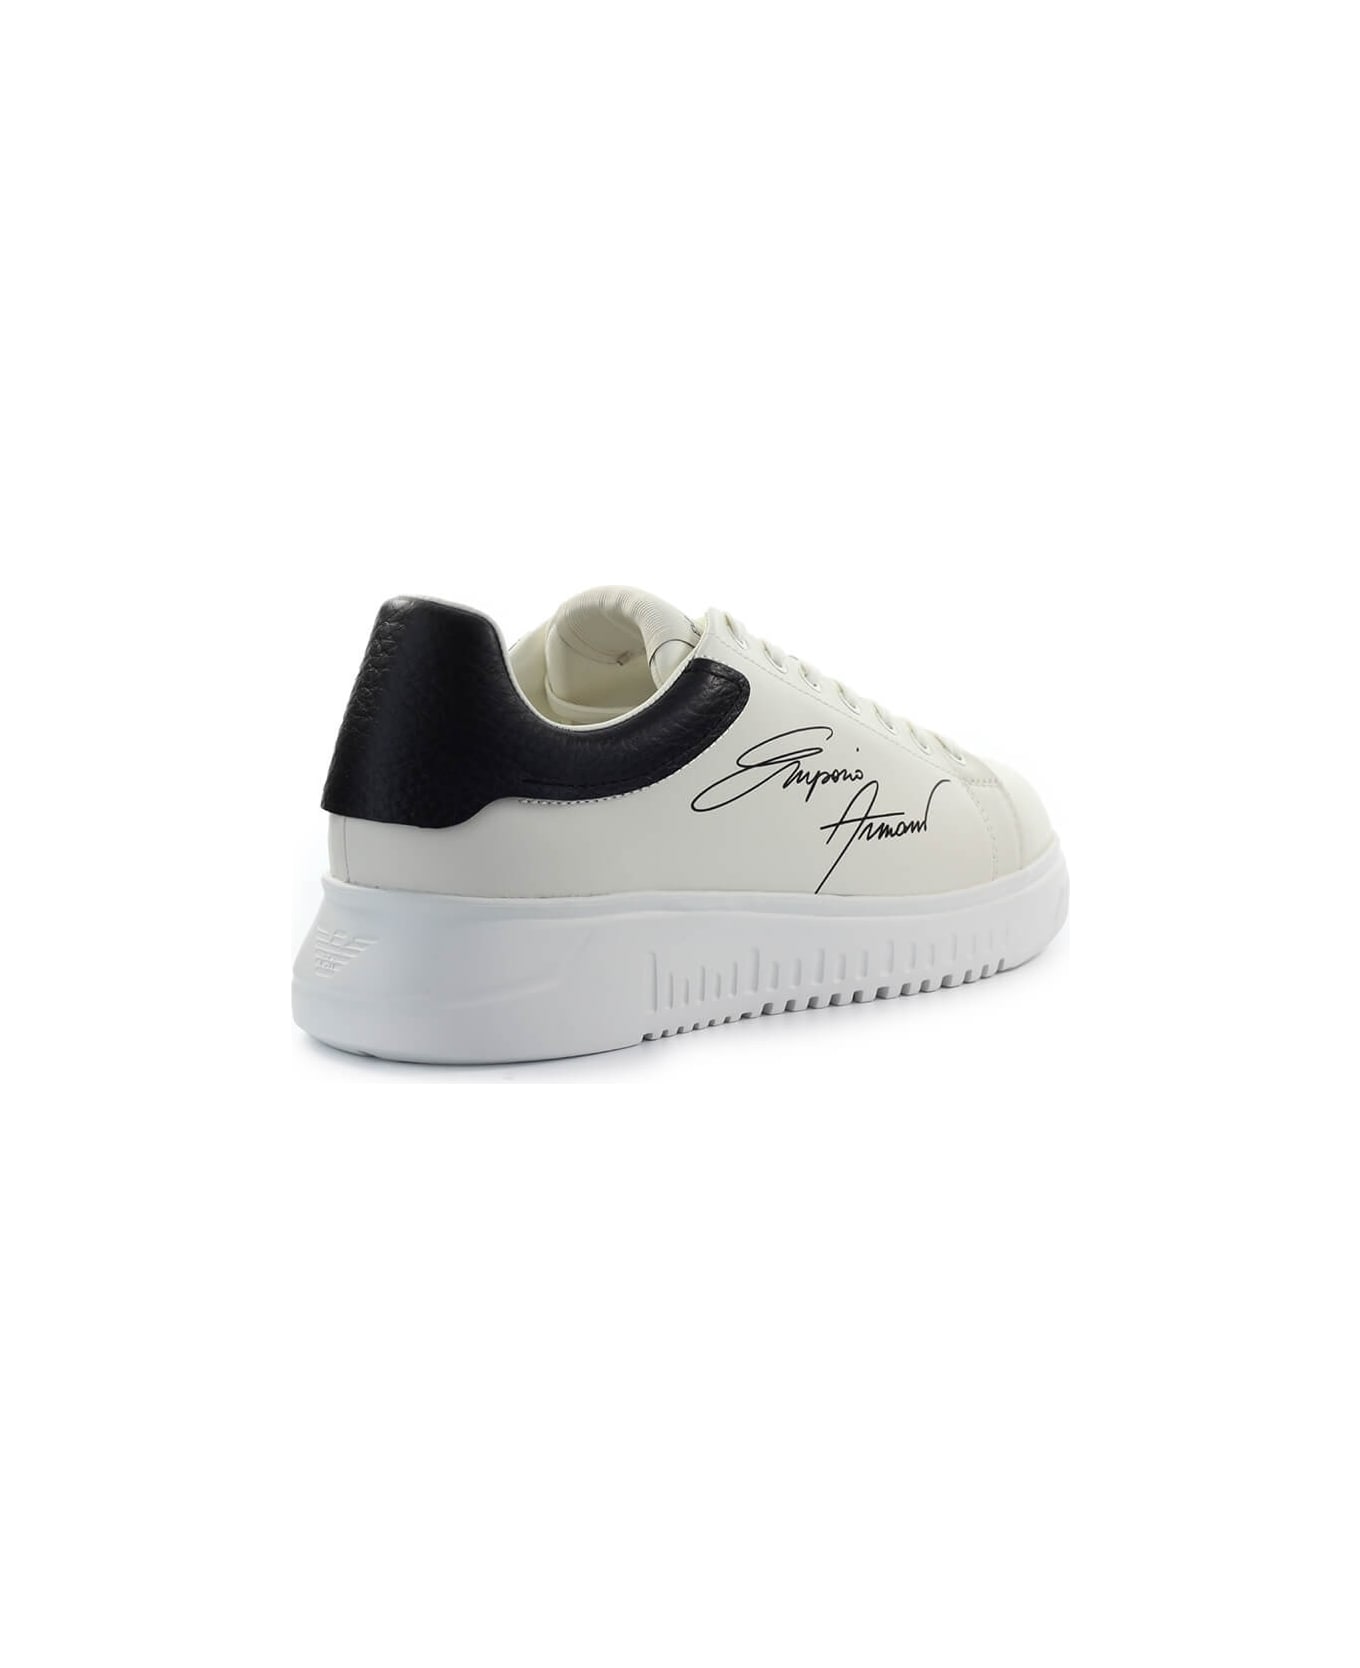 Emporio Armani Signature Cream Black Sneaker スニーカー